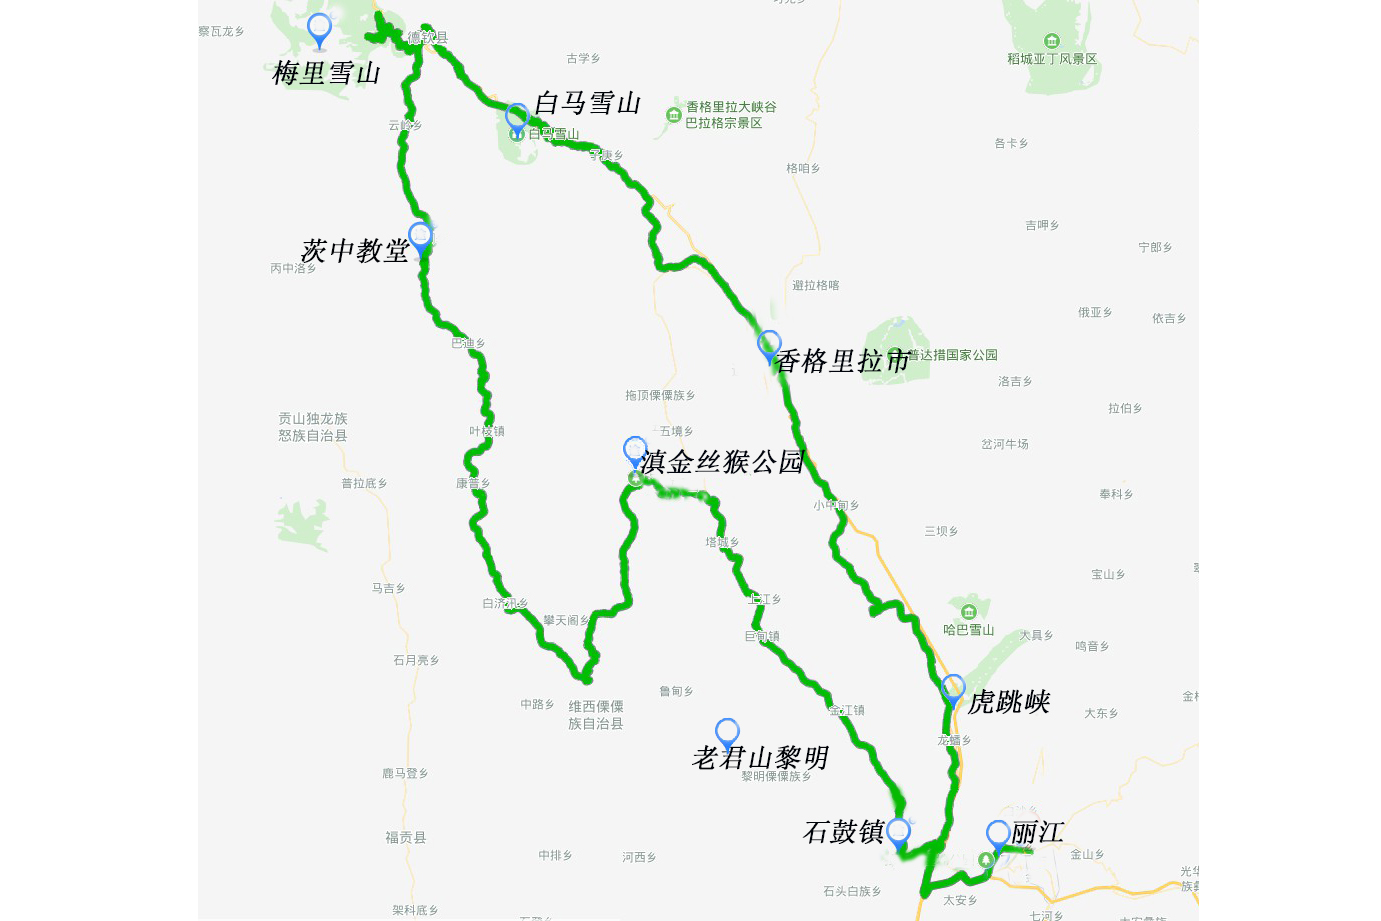 该线路位于三江并流核心区,为梅里雪山大环线